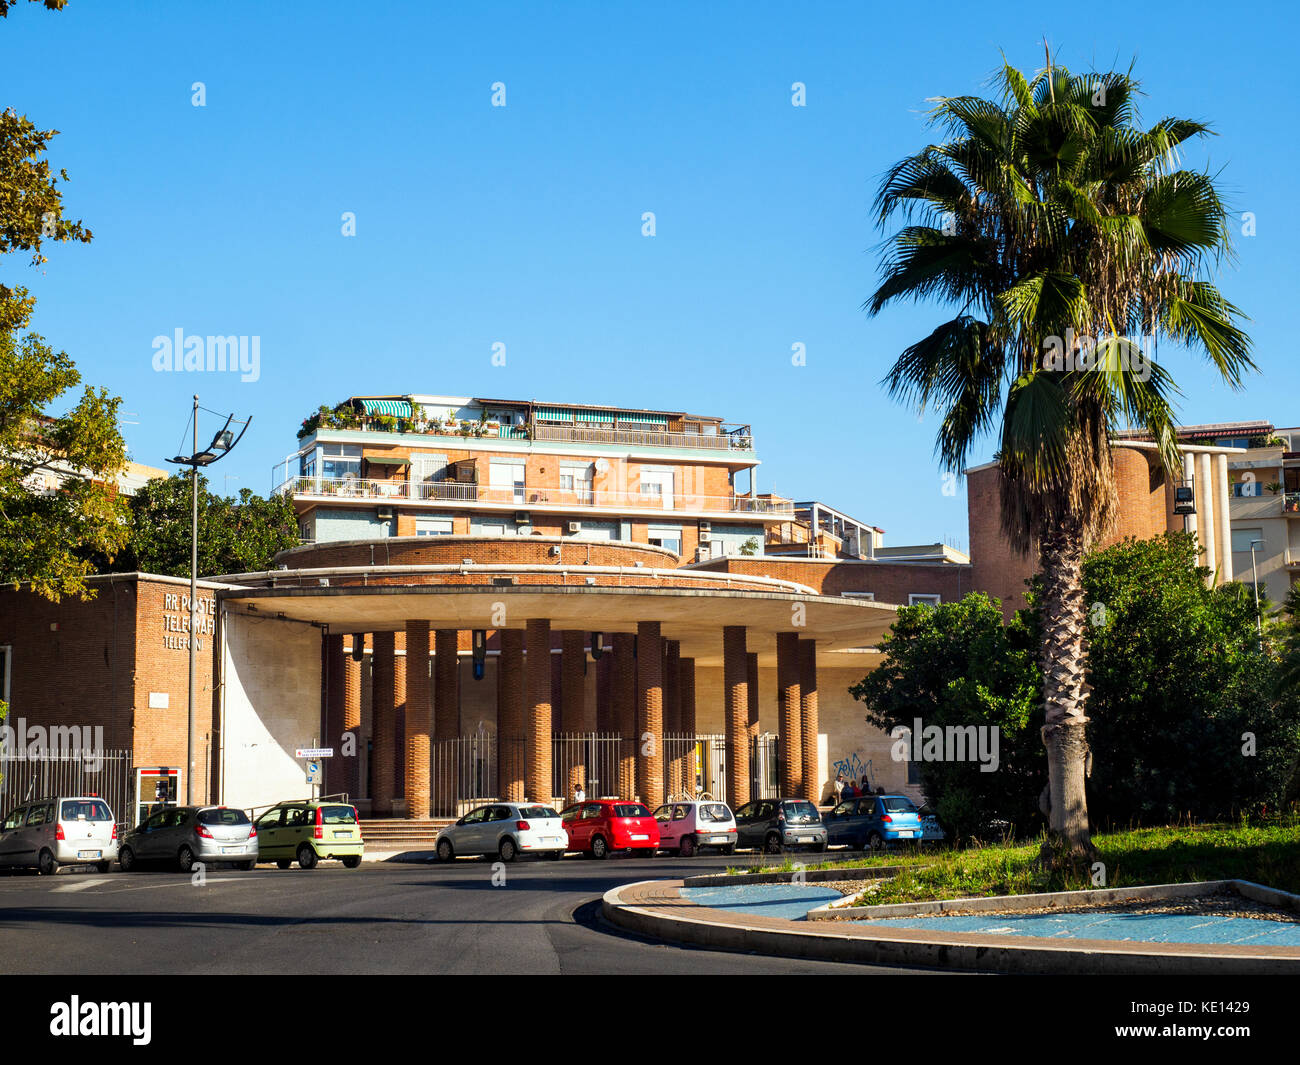 Bureau de poste central à Ostia lido - Rome, Italie Banque D'Images